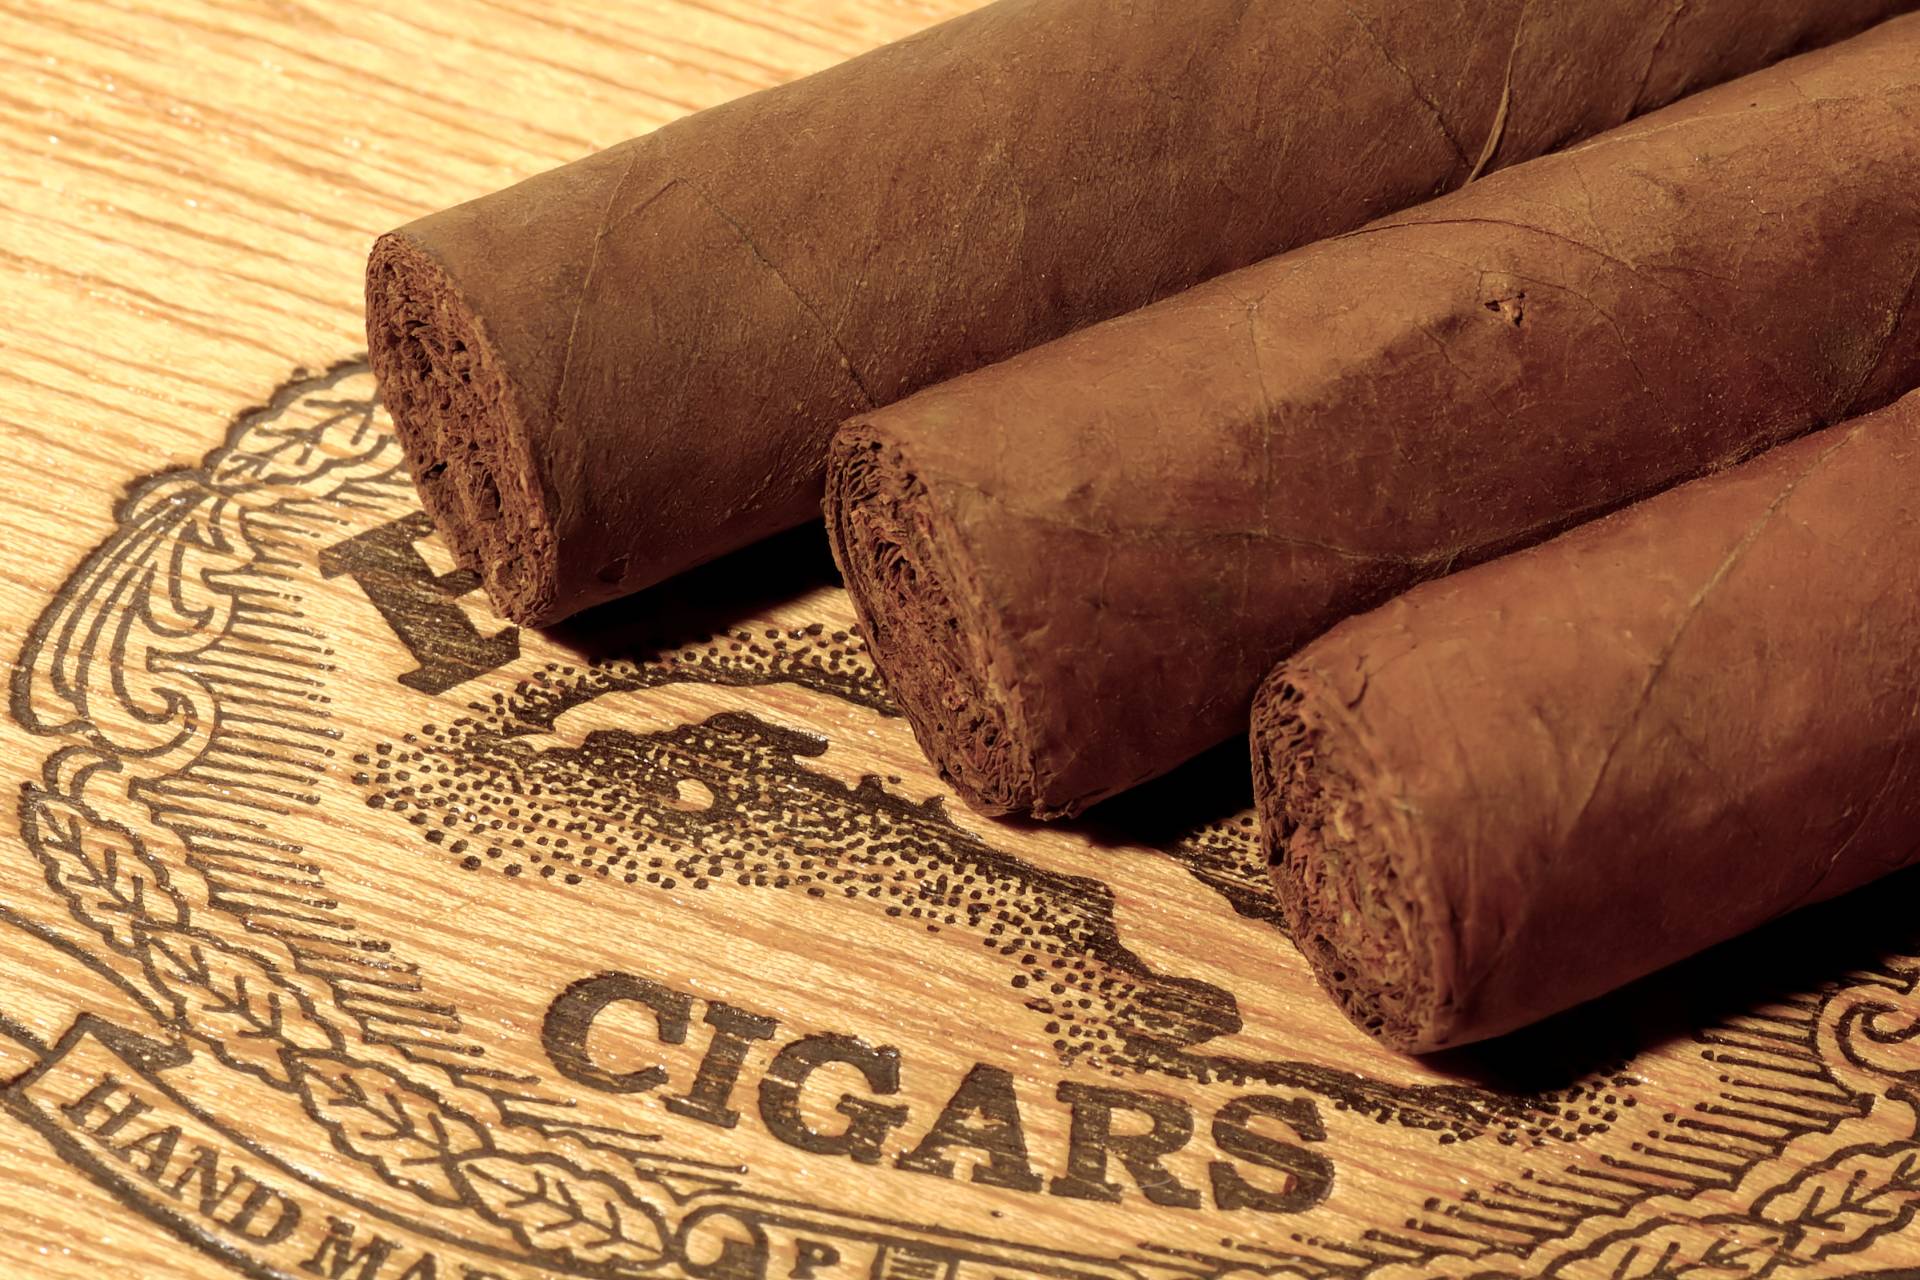 premium cigars of georgia (2)